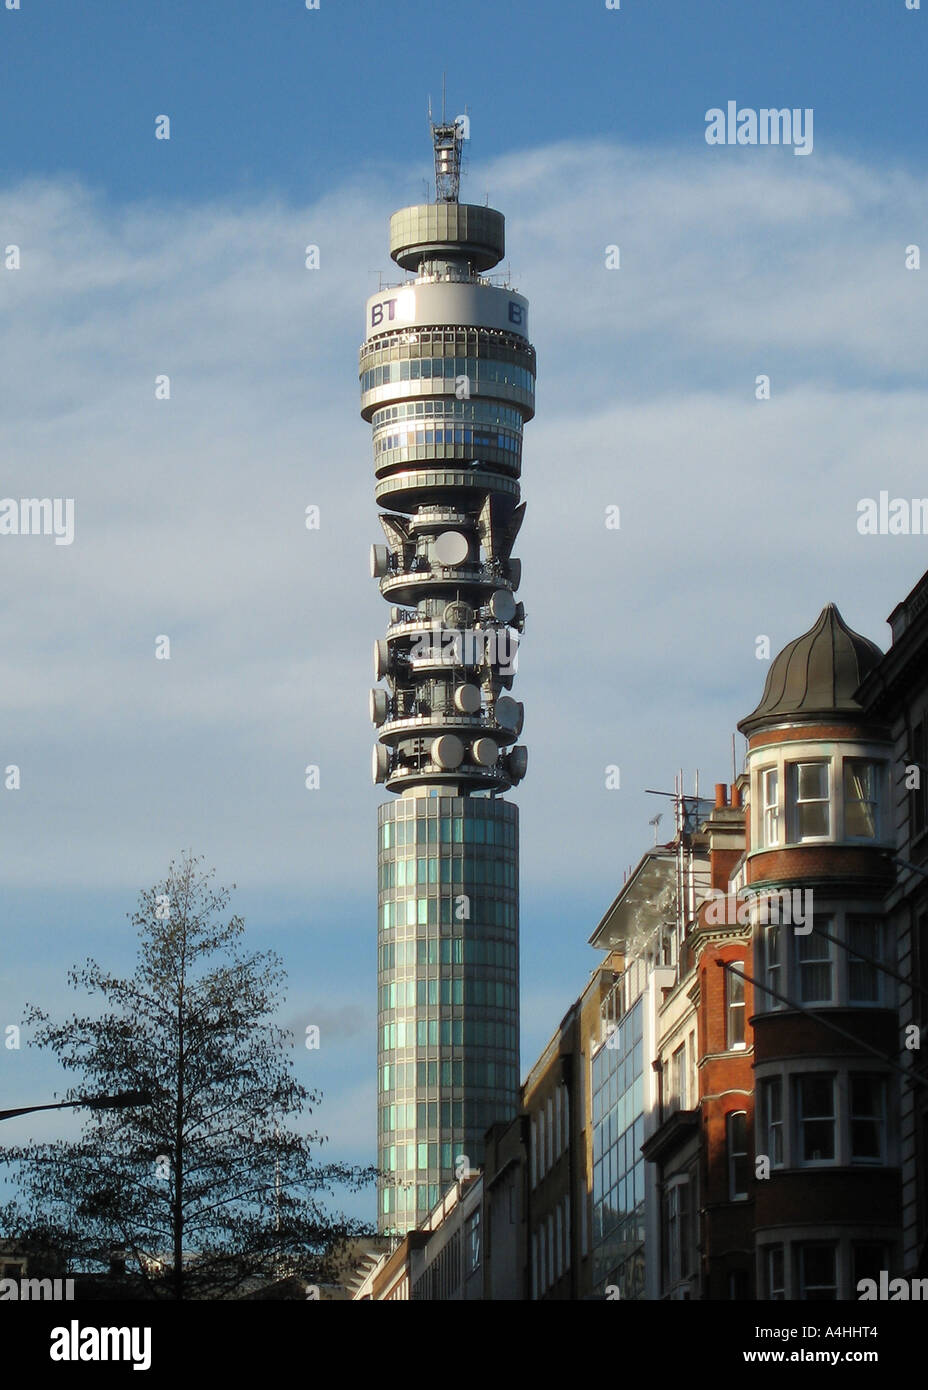 British Telecommunication Tower, London Stock Photo